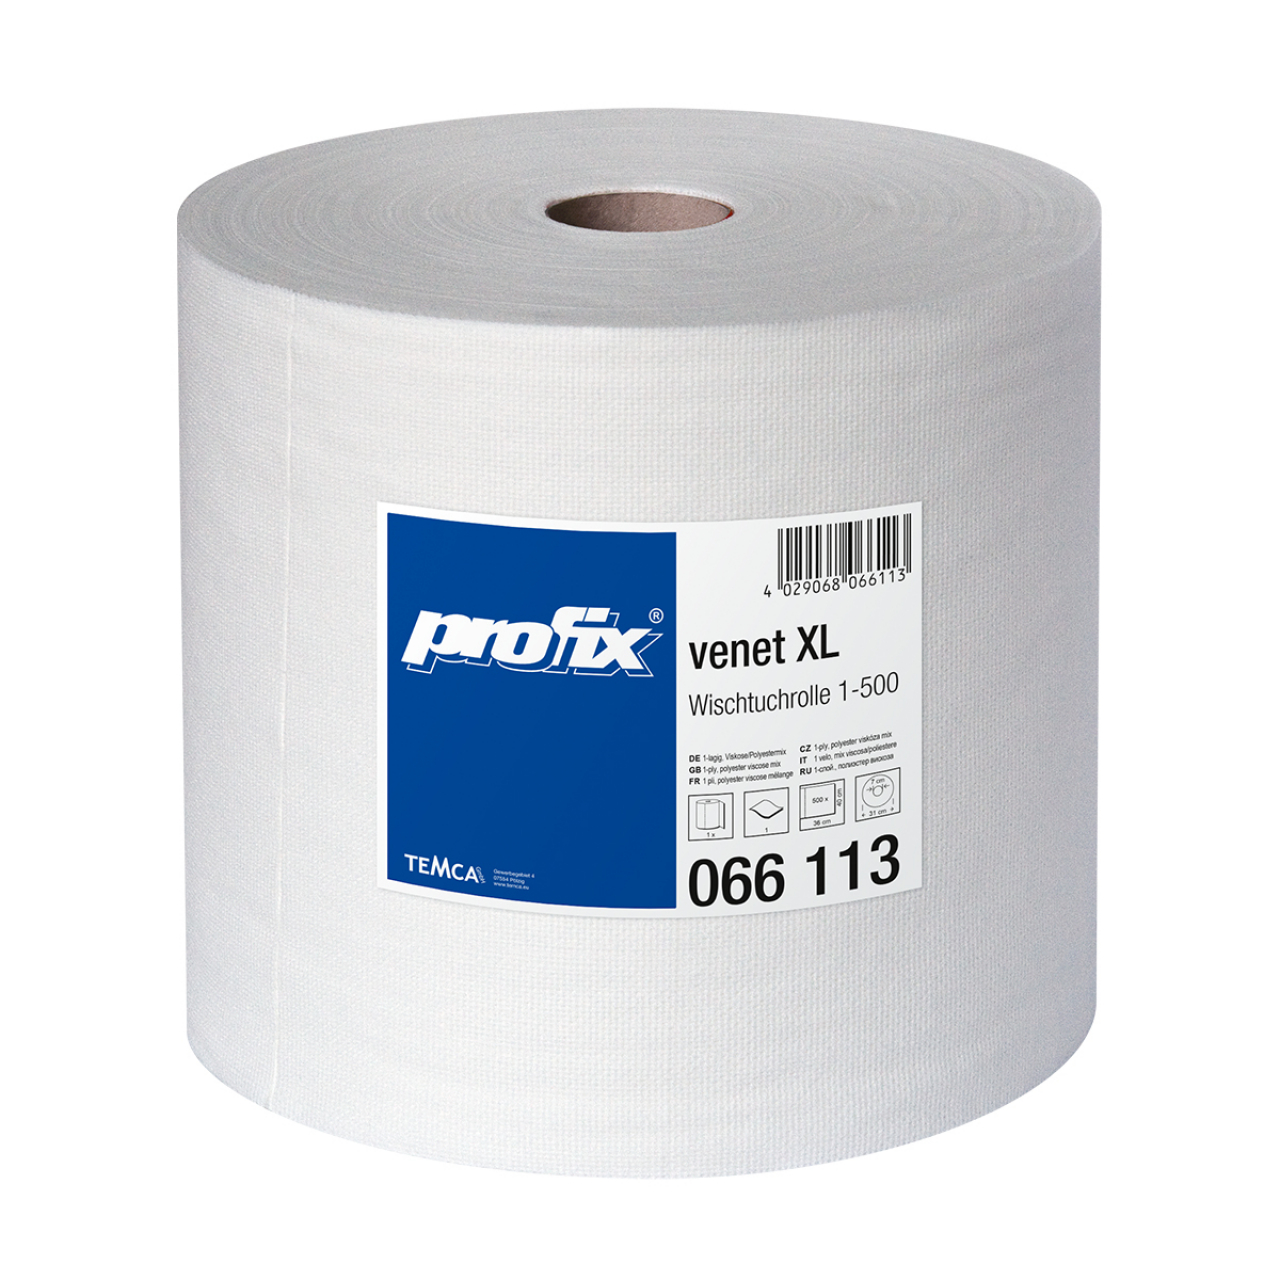 Profix Venet XL élelmiszeriparban használható ipari törlő tekercs